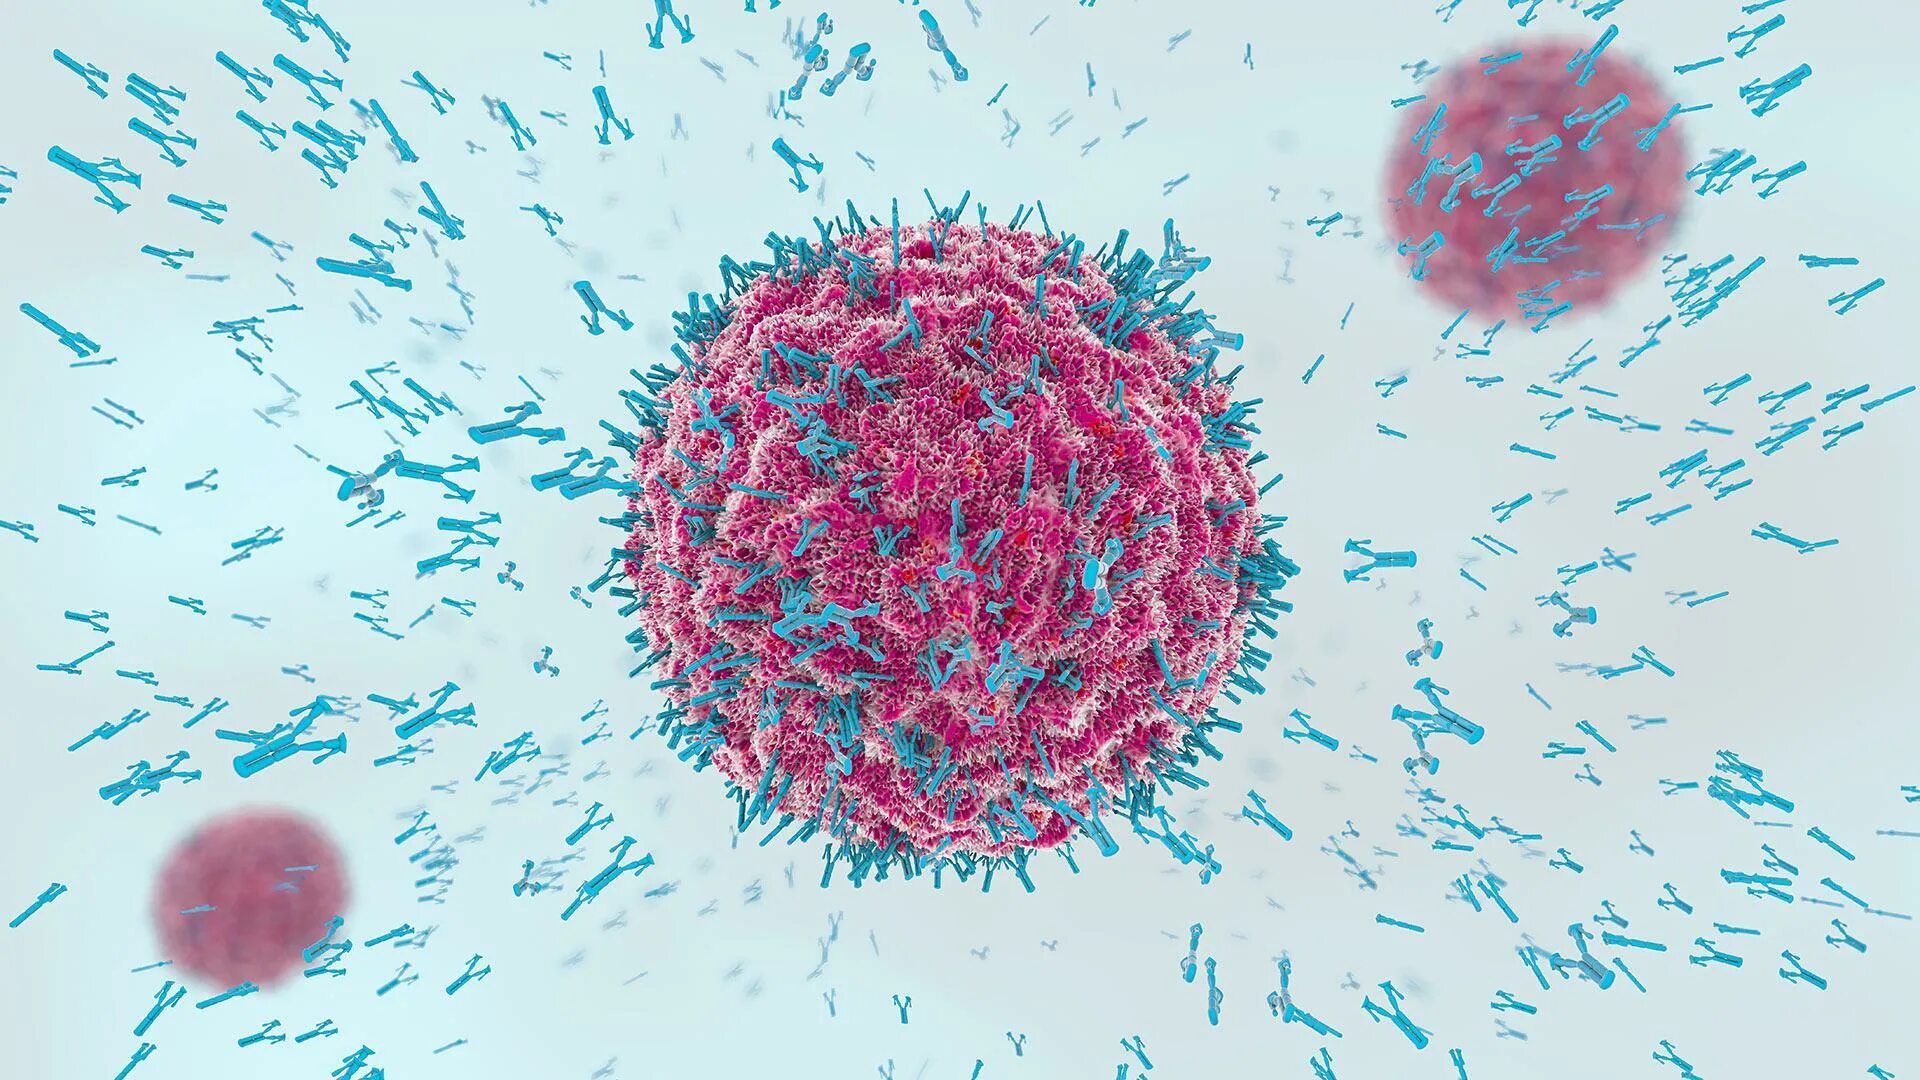 Иммуноглобулин в лимфоциты. Иммунитет антитела антигены. Т-лимфоциты (антитела IGG 4). Антитела к коронавирусу под микроскопом. Коронавирус иммунитет микробиология.